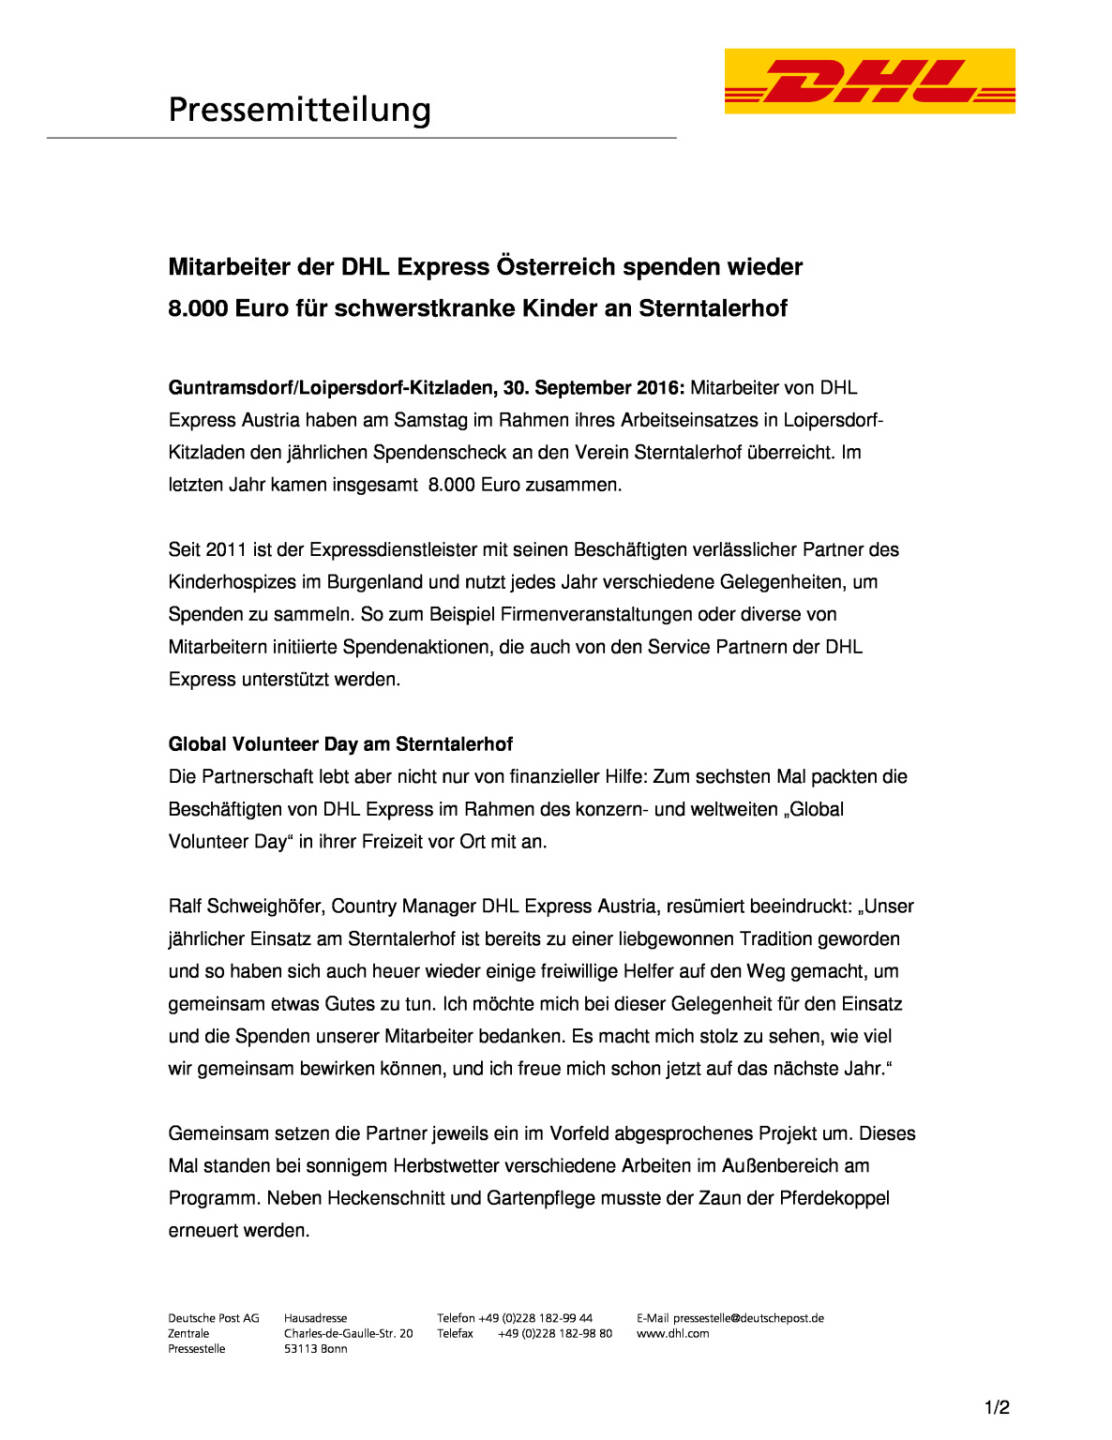 DHL Express Österreich Mitarbeiter: Spende für Sterntalerhof , Seite 1/2, komplettes Dokument unter http://boerse-social.com/static/uploads/file_1862_dhl_express_osterreich_mitarbeiter_spende_fur_sterntalerhof.pdf